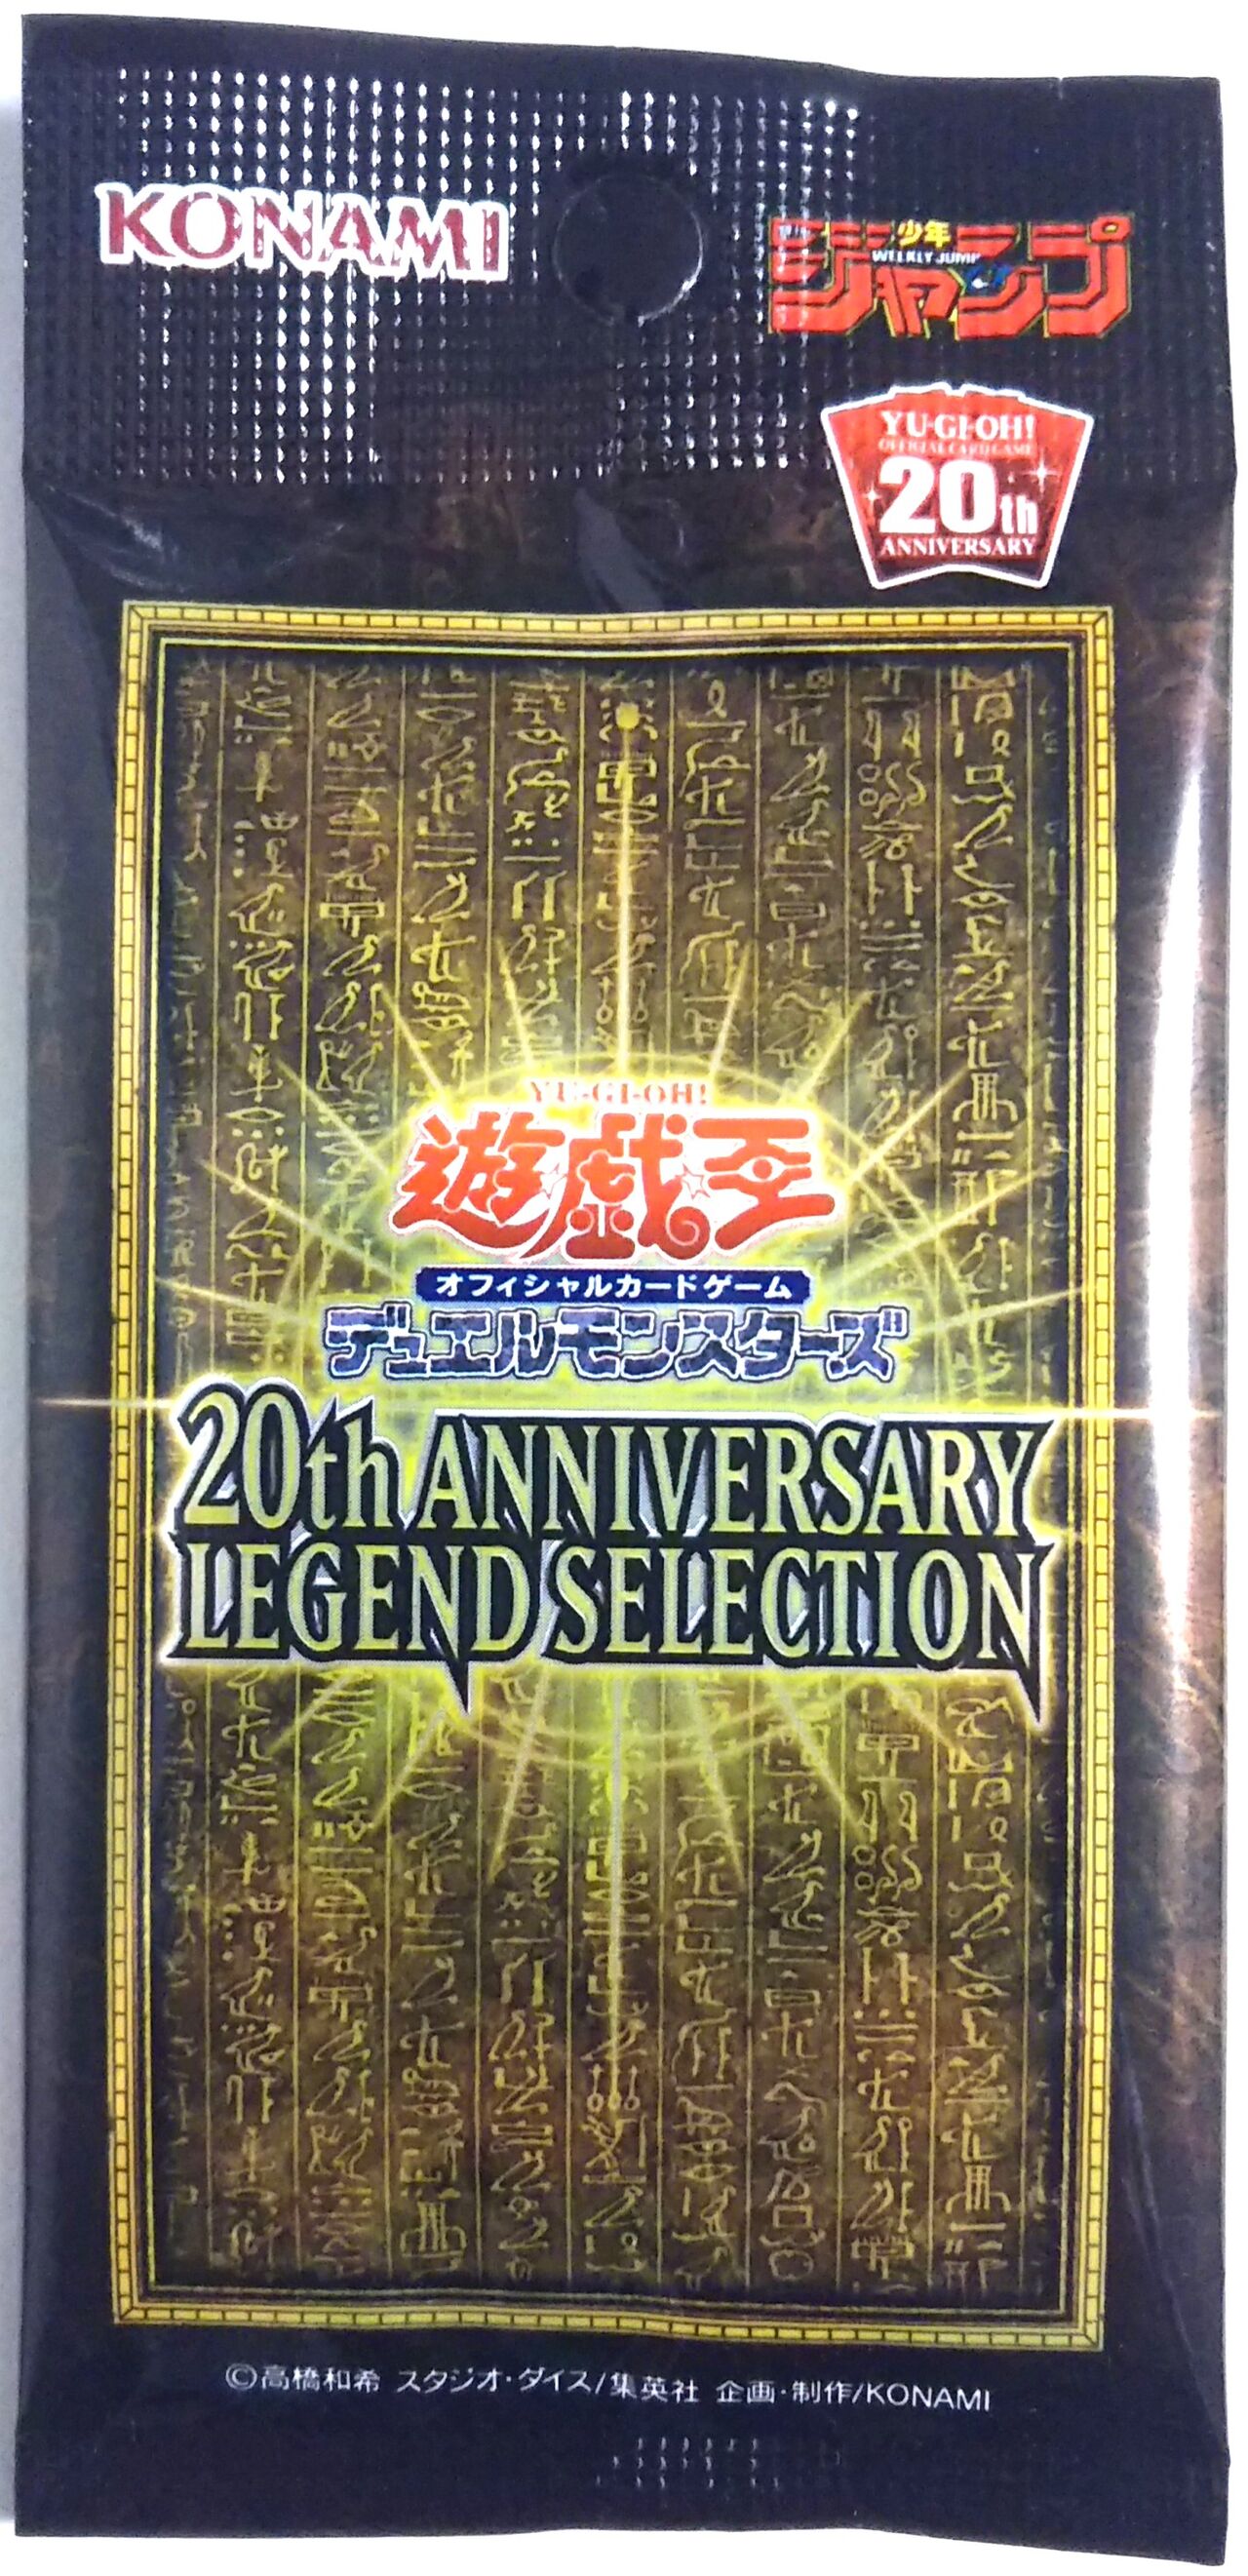 遊戯王 ラー 20th anniversary legend selection